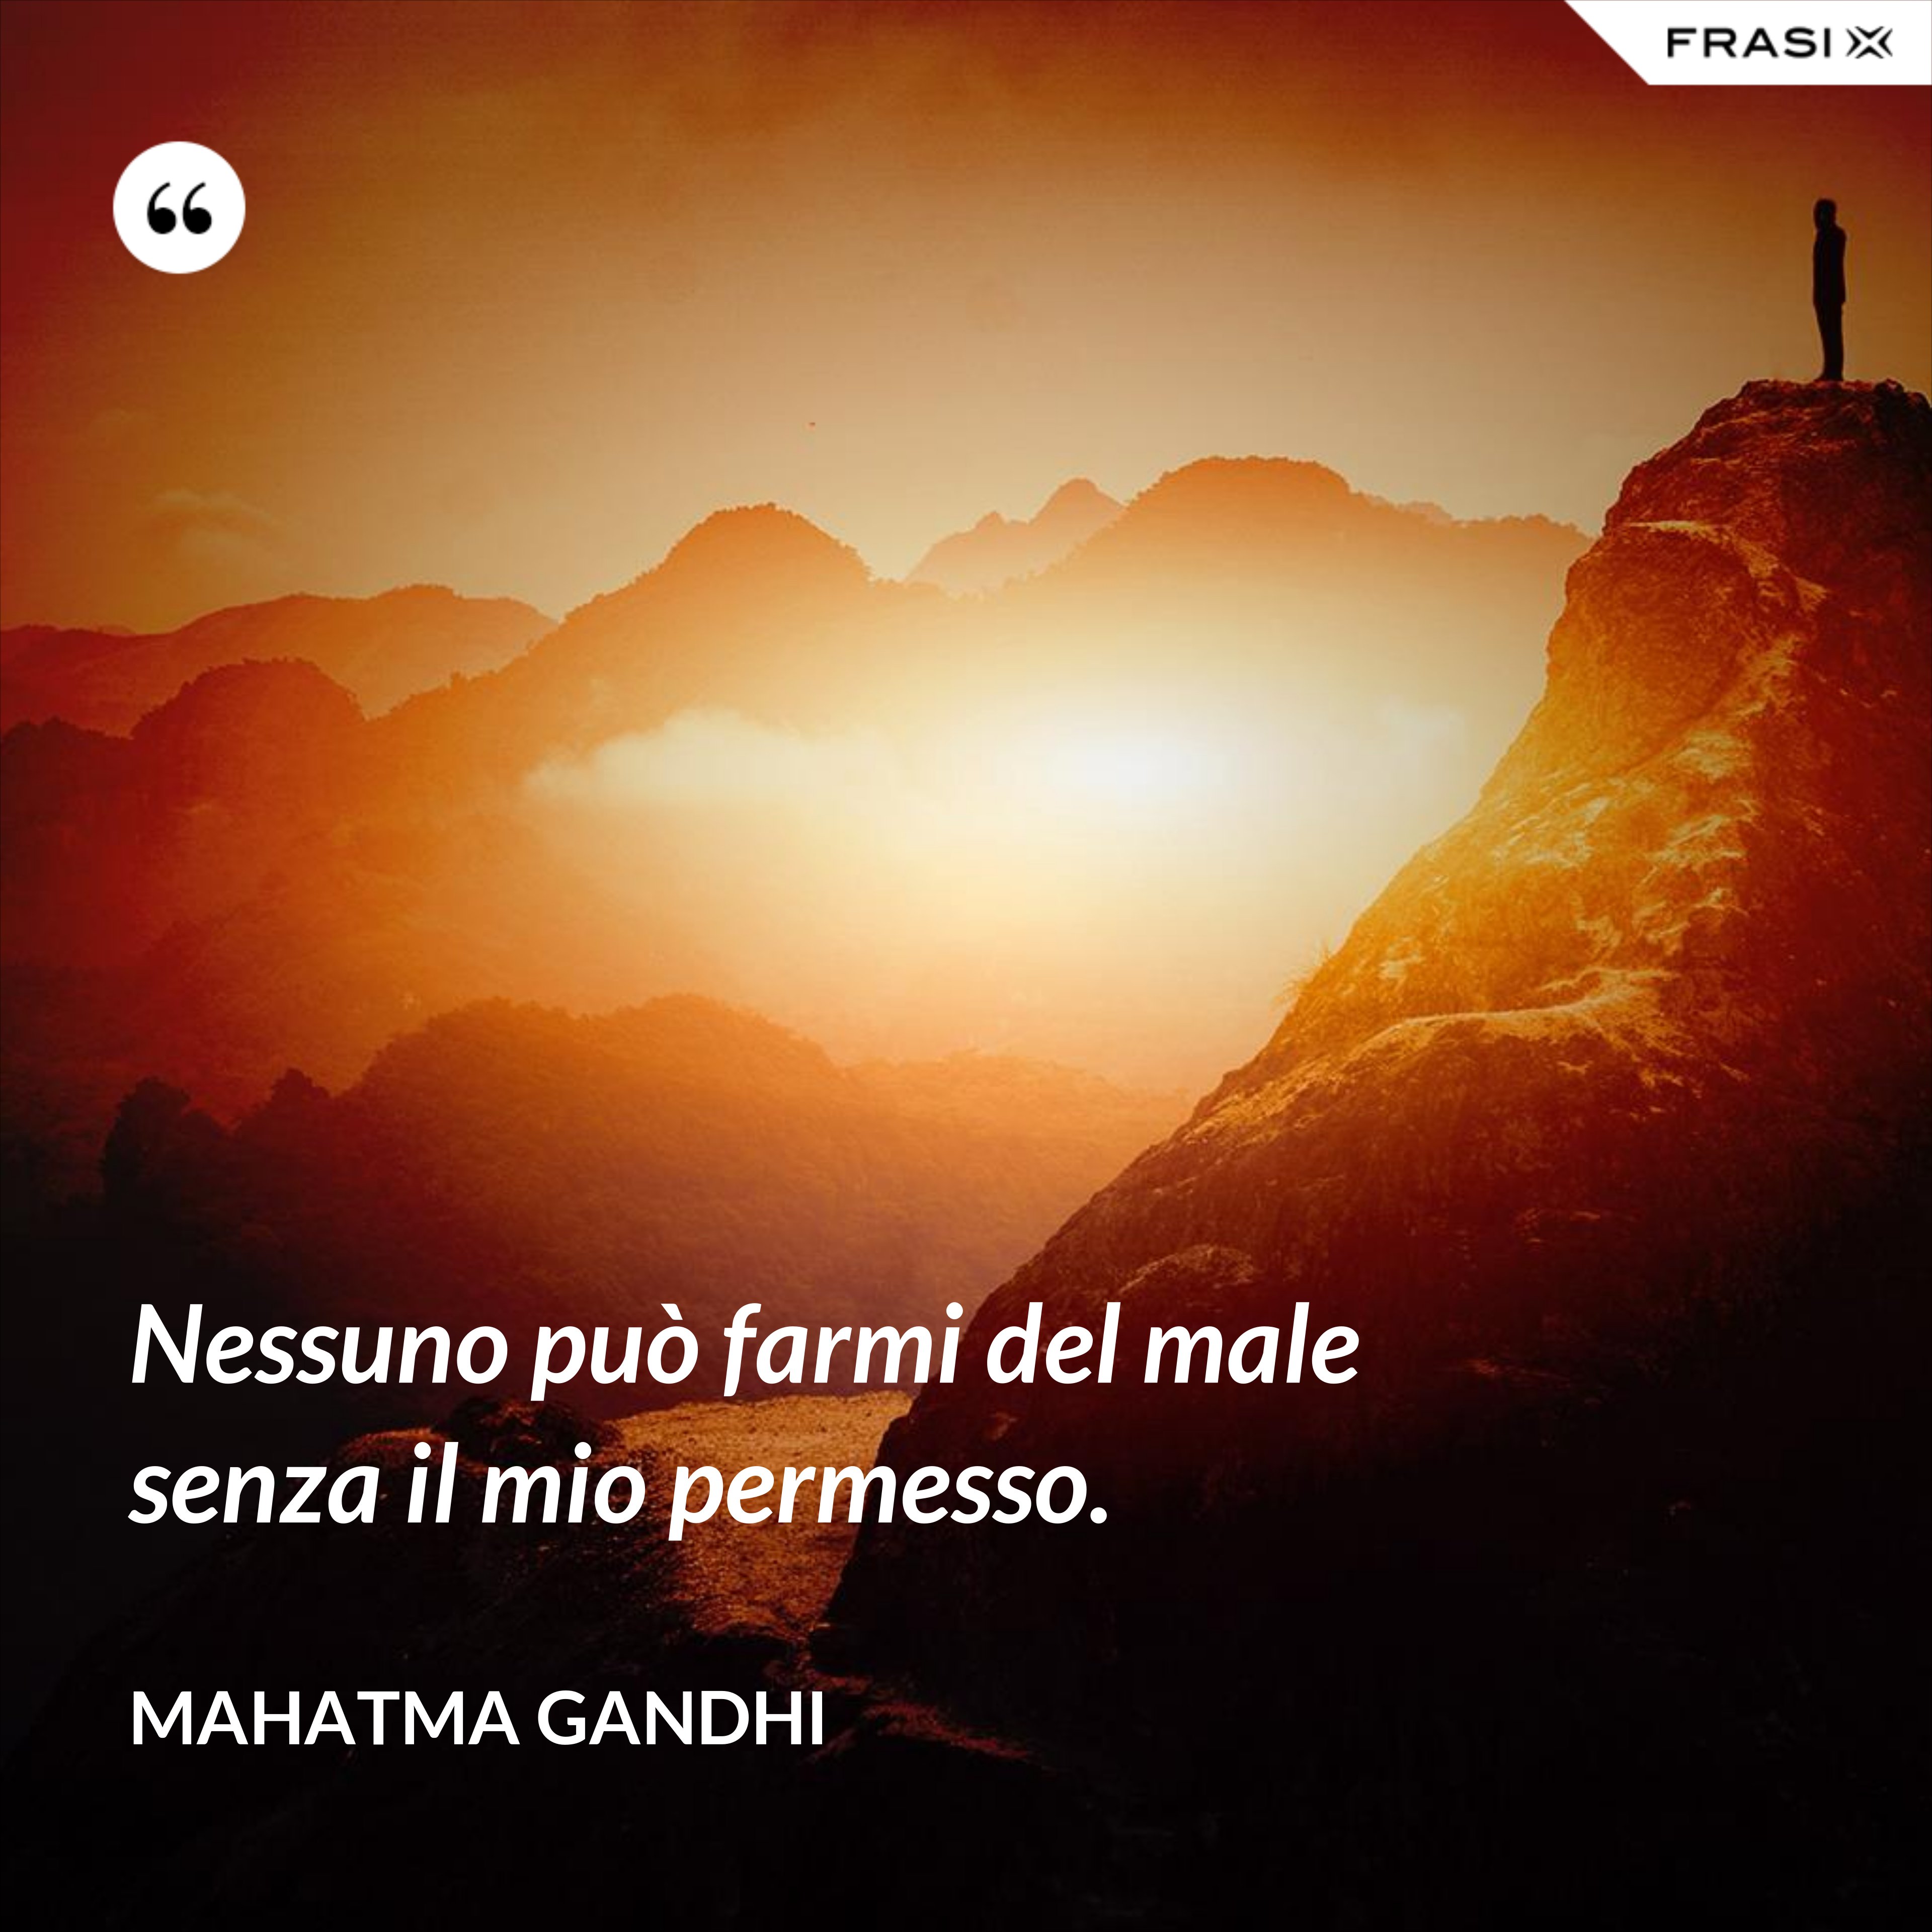 Nessuno può farmi del male senza il mio permesso. - Mahatma Gandhi